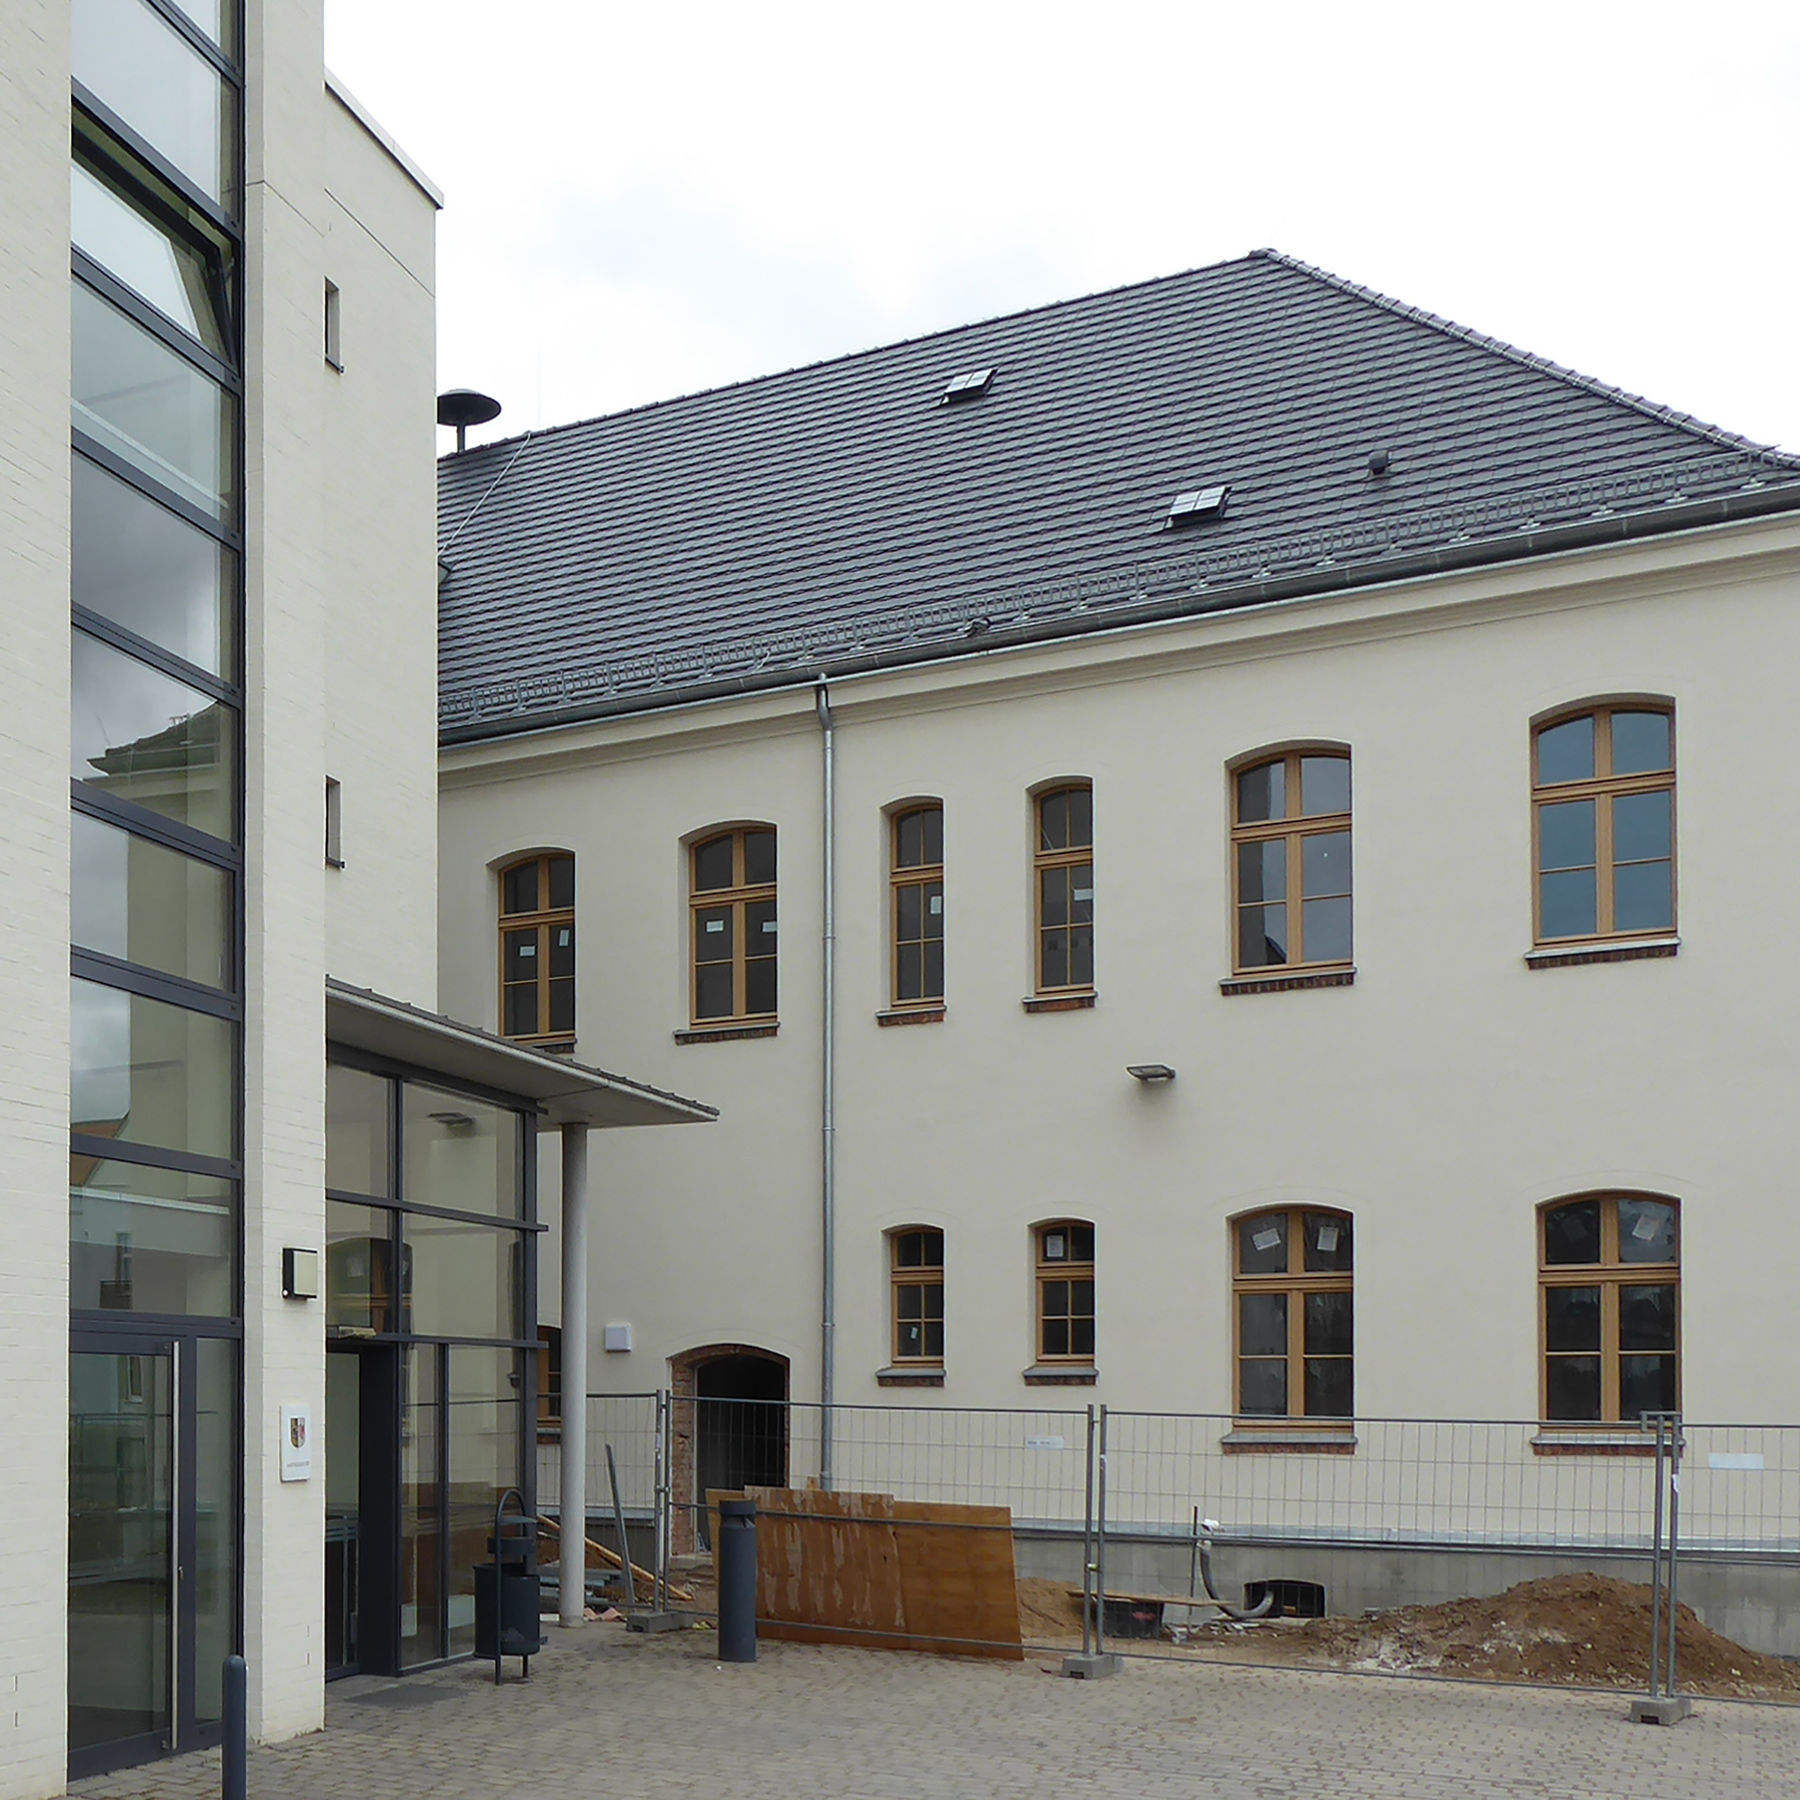 Blick auf die Rückseite mit dem Verbindungsneubau Haus 2 © 2020 milatz.schmidt architekten gmbh, Neubrandenburg